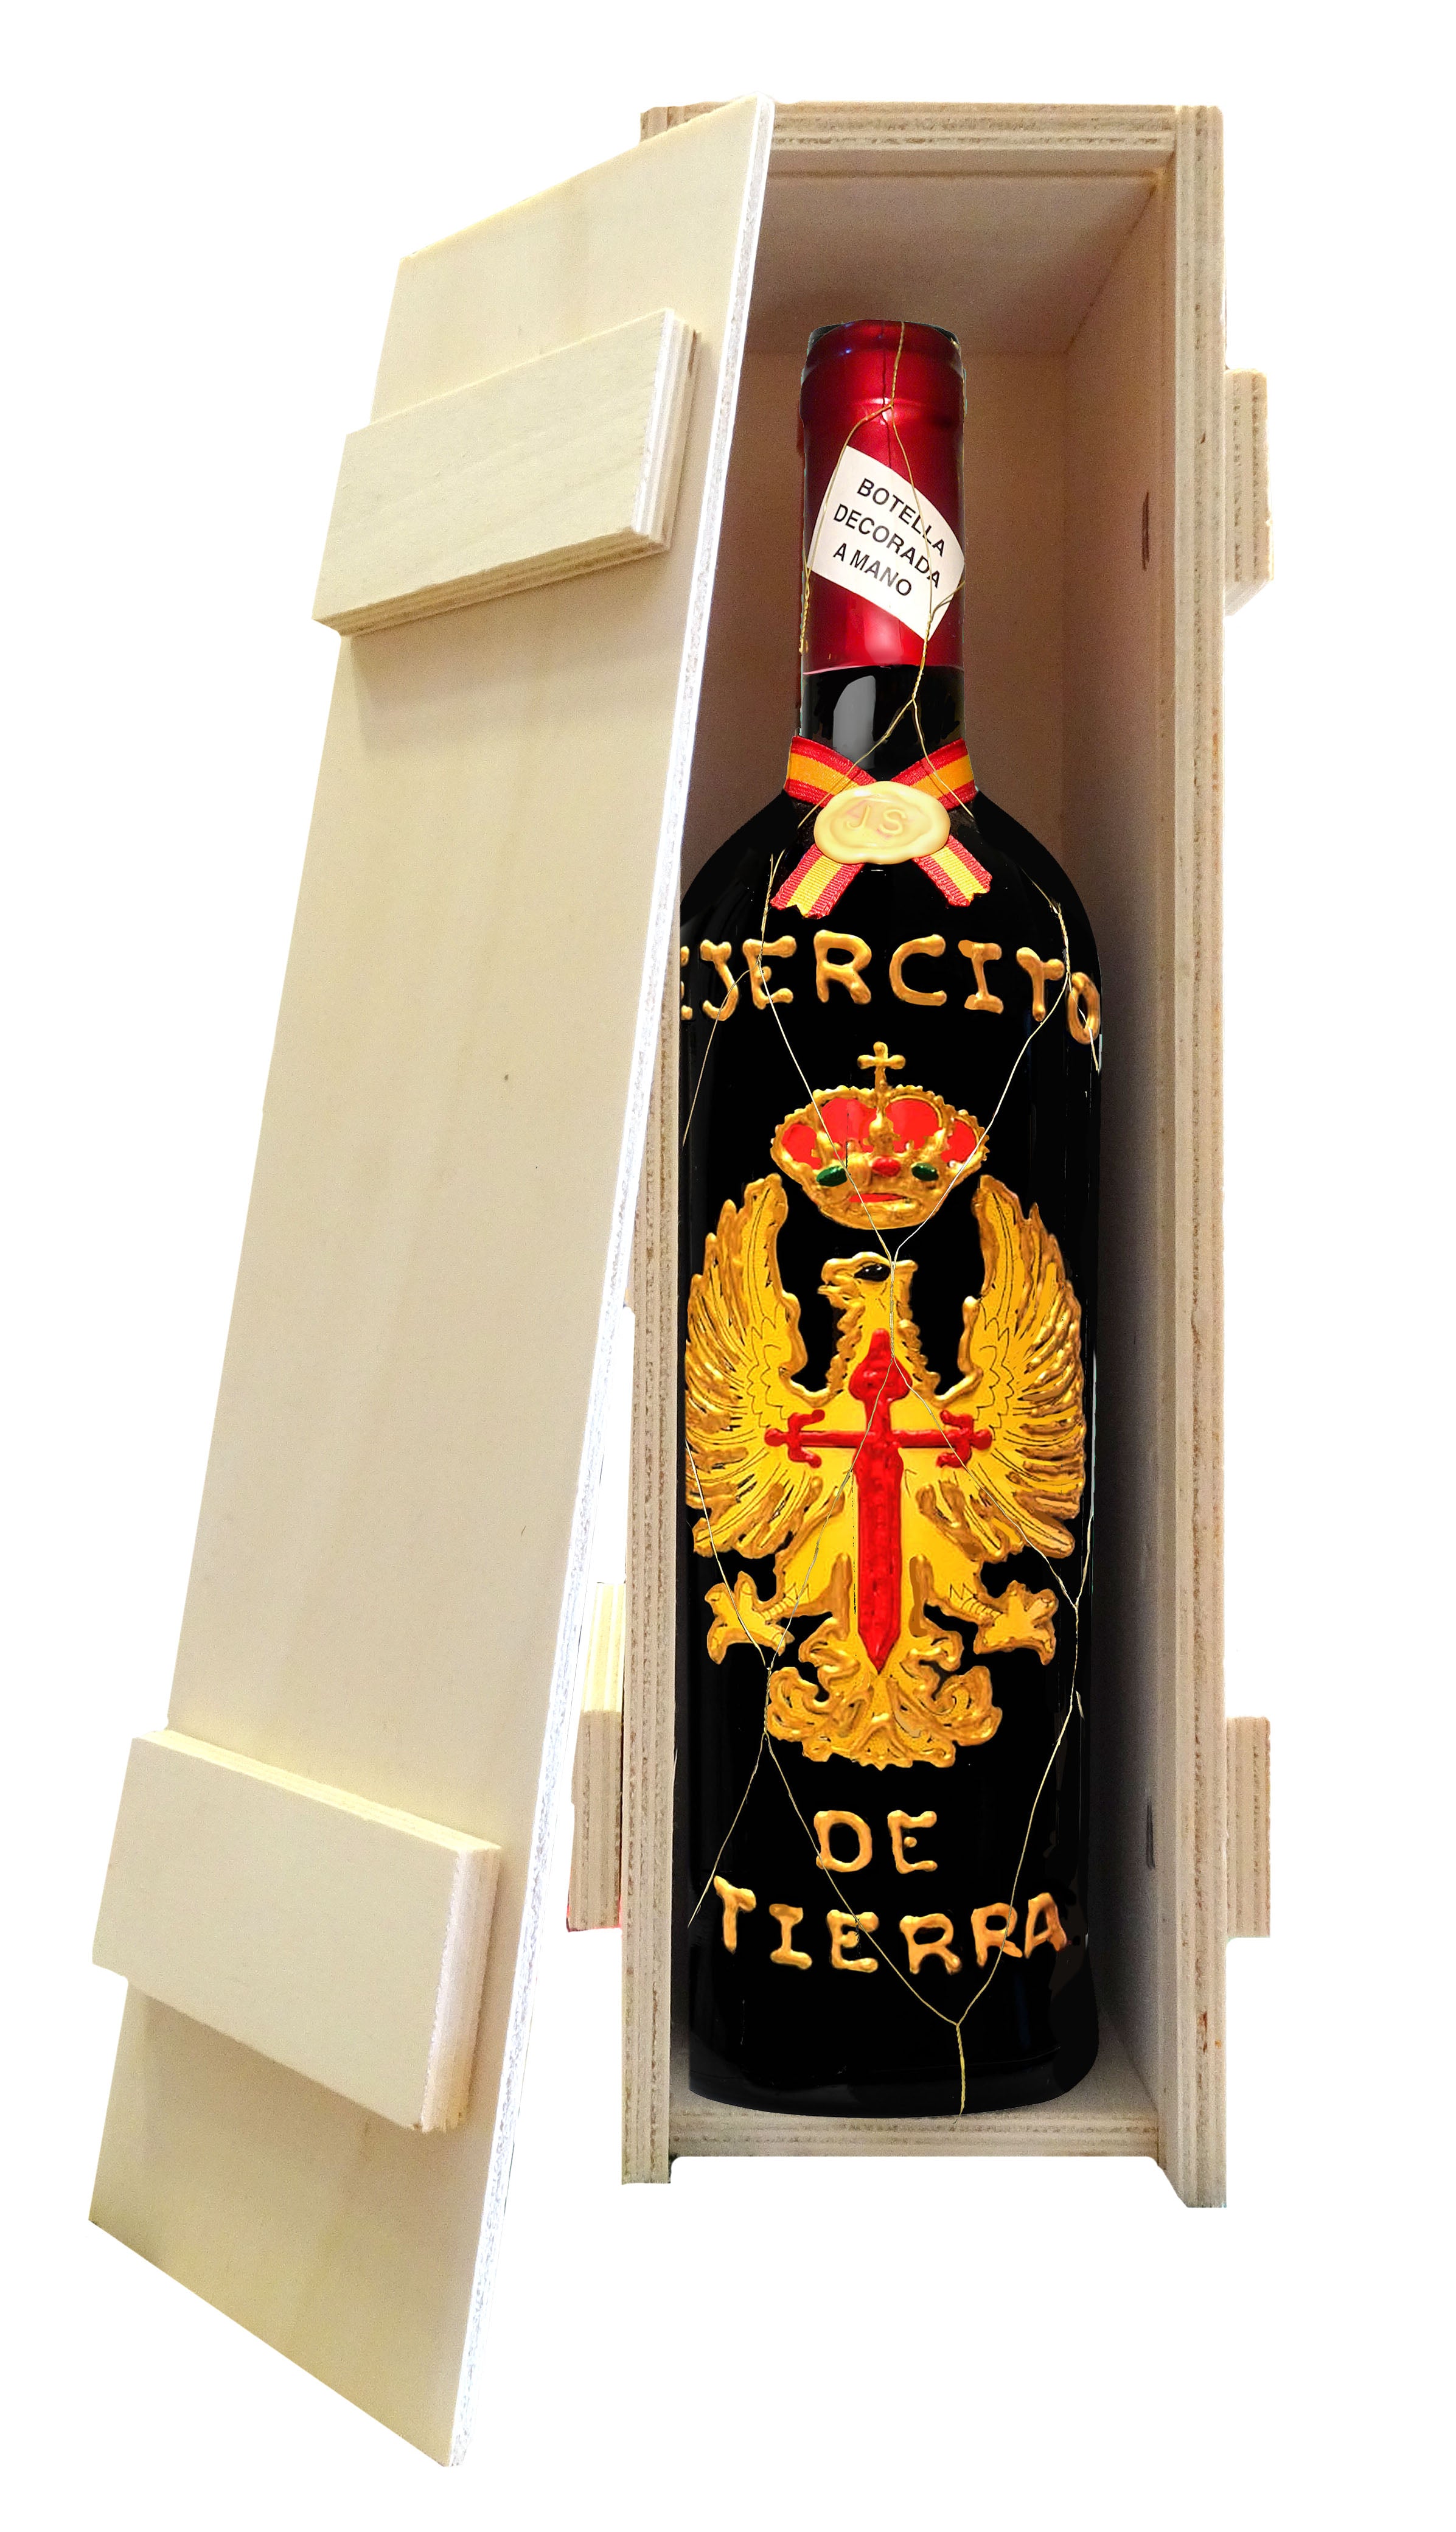 Botella vino Ejercito Tierra - Delampa